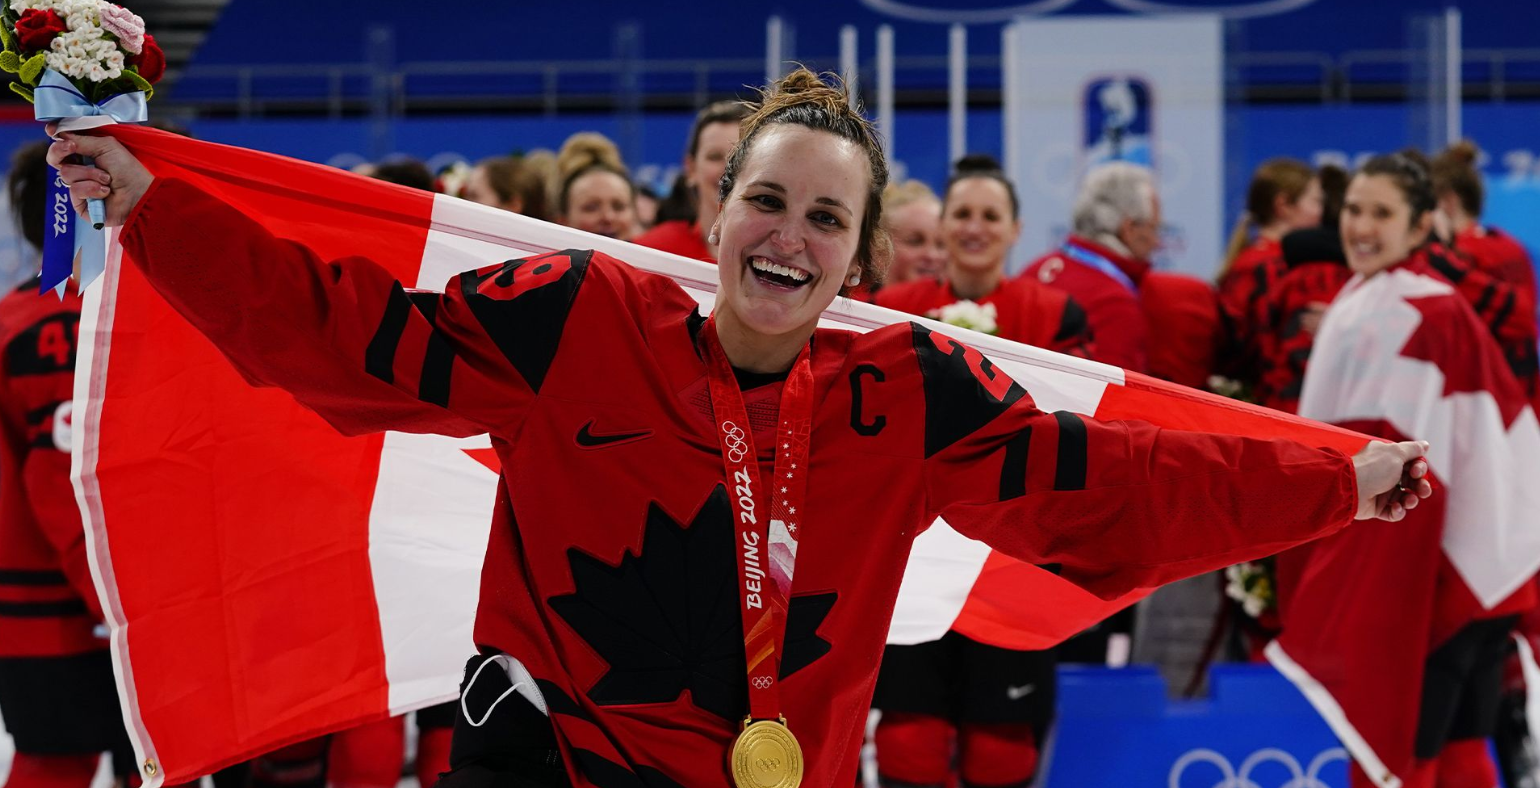 Qualifiée de «l'une des meilleures athlètes des grands moments au pays», la capitaine de l'équipe nationale féminine de hockey, Marie-Philip Poulin, a été élue l'athlète féminine de l'année de La Presse Canadienne.